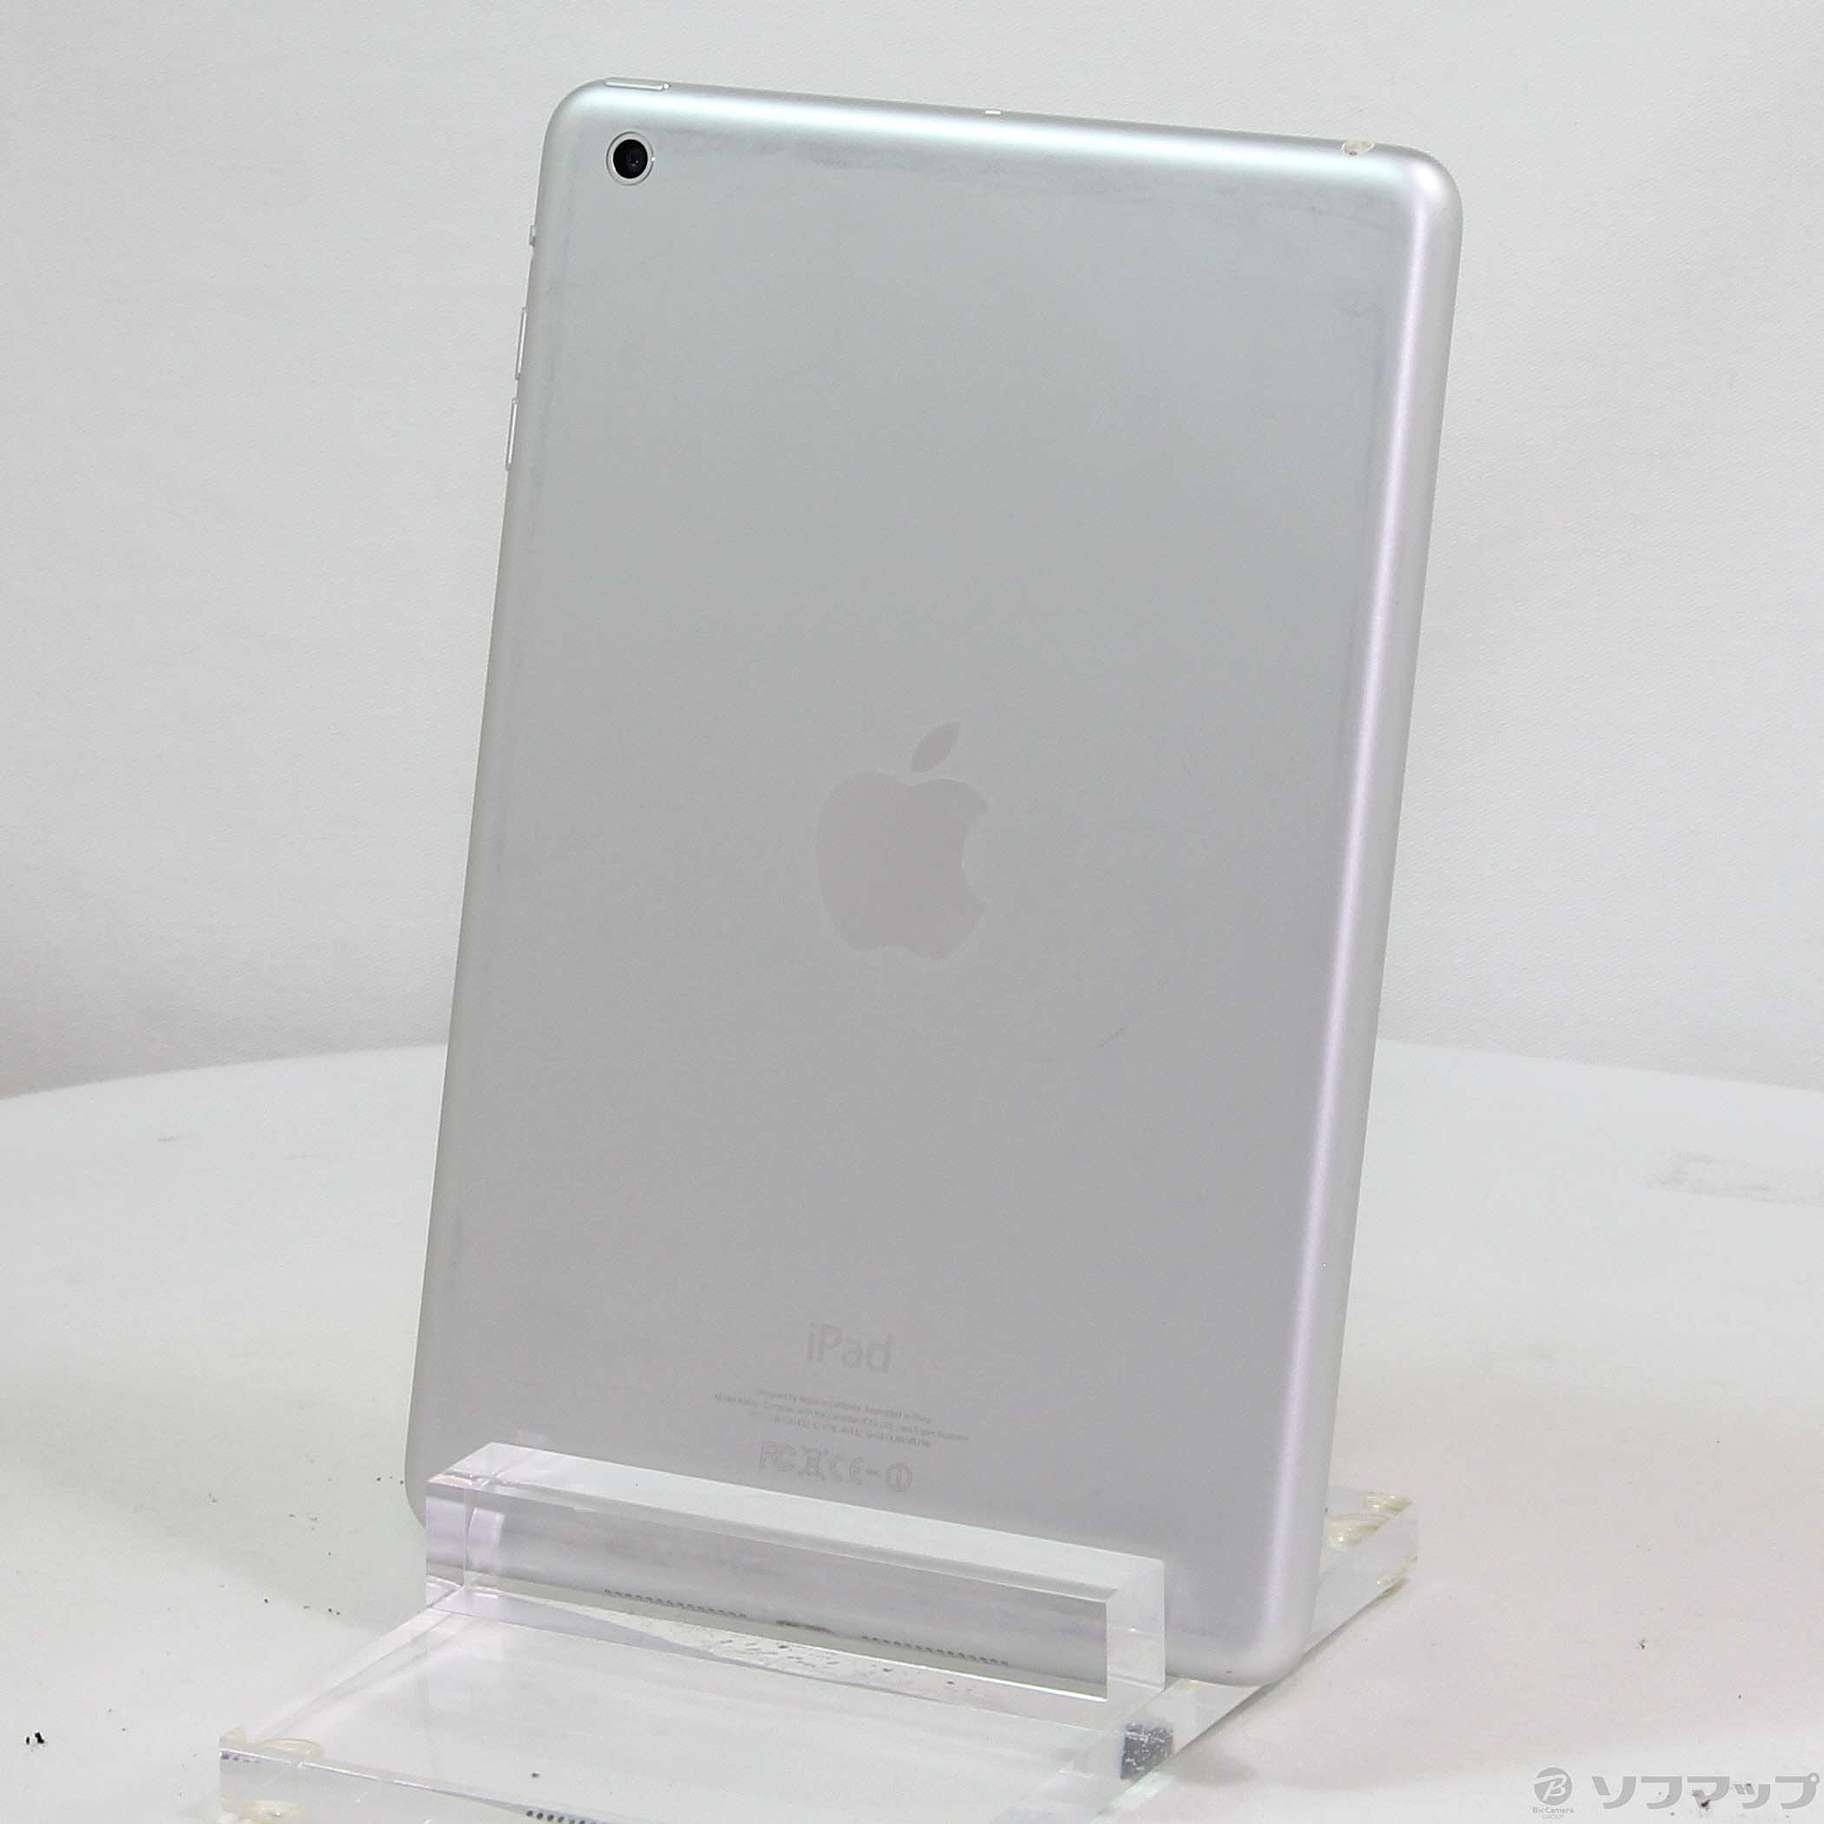 iPad mini MD531J A Wi-Fi 16GB white